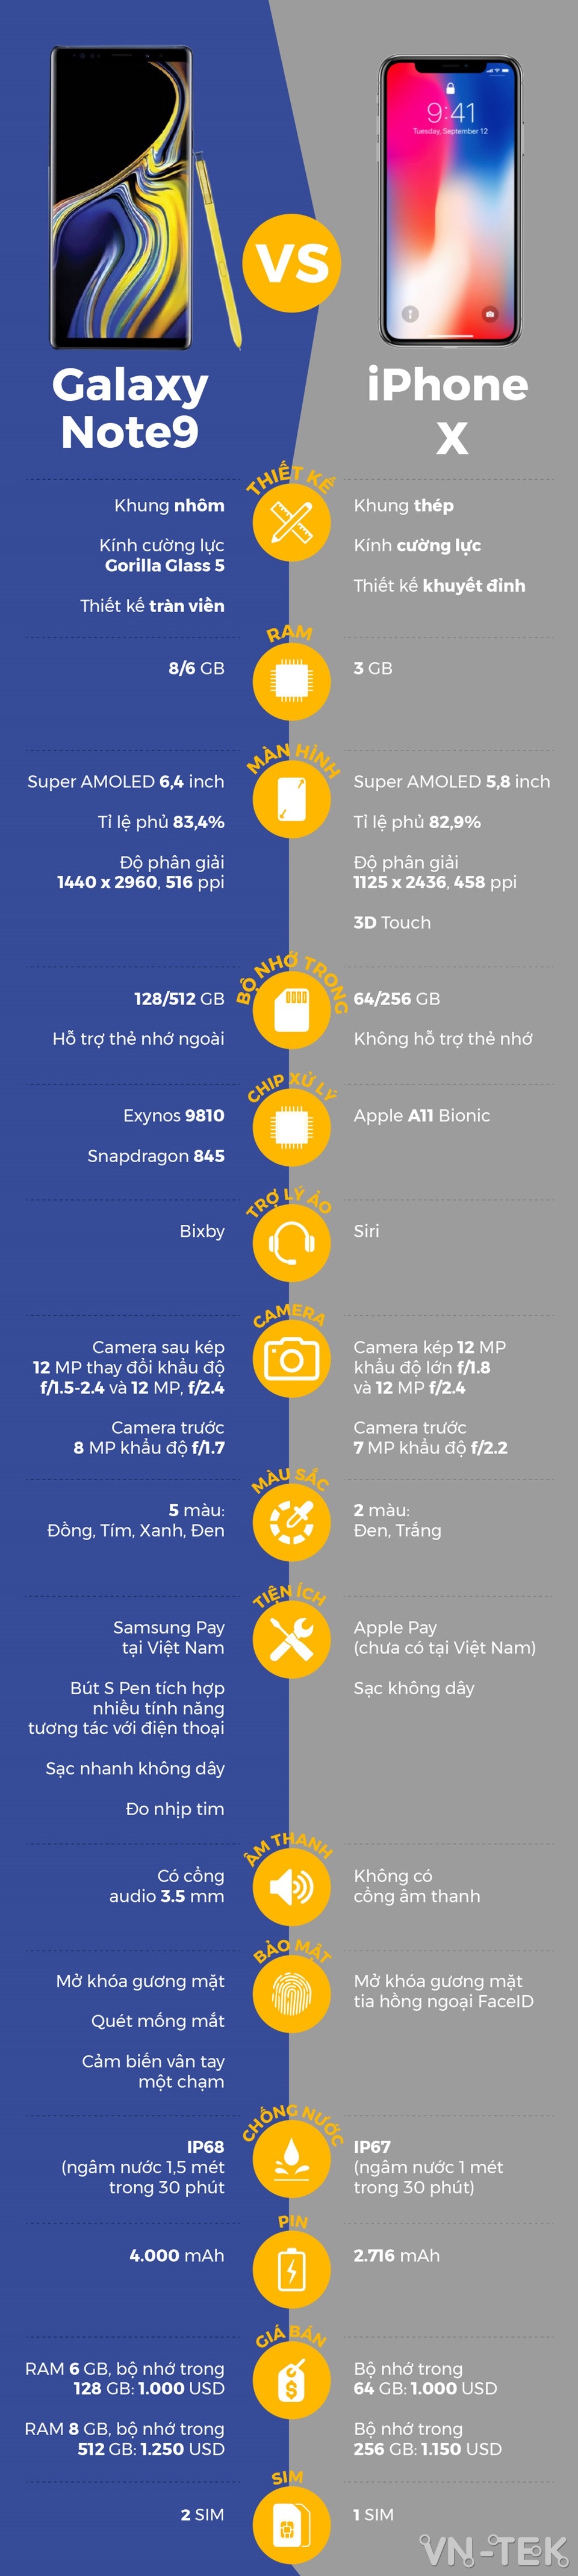 note 9 vs iphone x - iPhone X đọ thông số với Galaxy Note9 vừa ra mắt